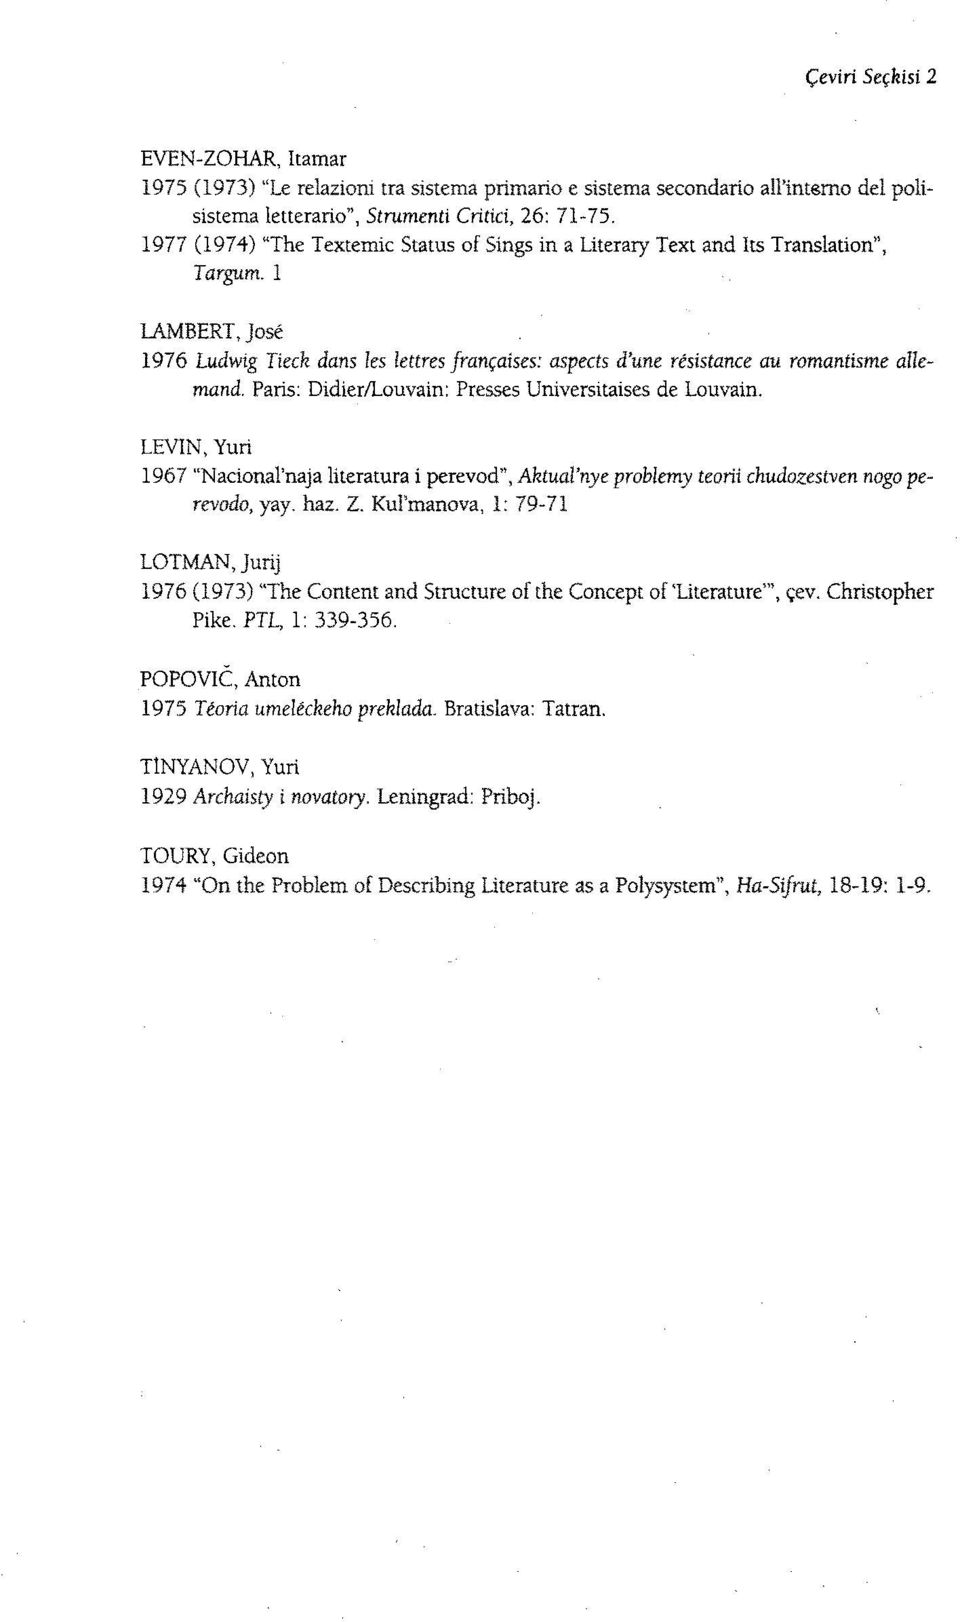 1 LAMBERT, José 1976 Ludwig Tieck dans les lettres françaises: aspects d'une résistance au romantisme allemand. Paris: Didier/Louvain: Presses Universitaises de Louvain.